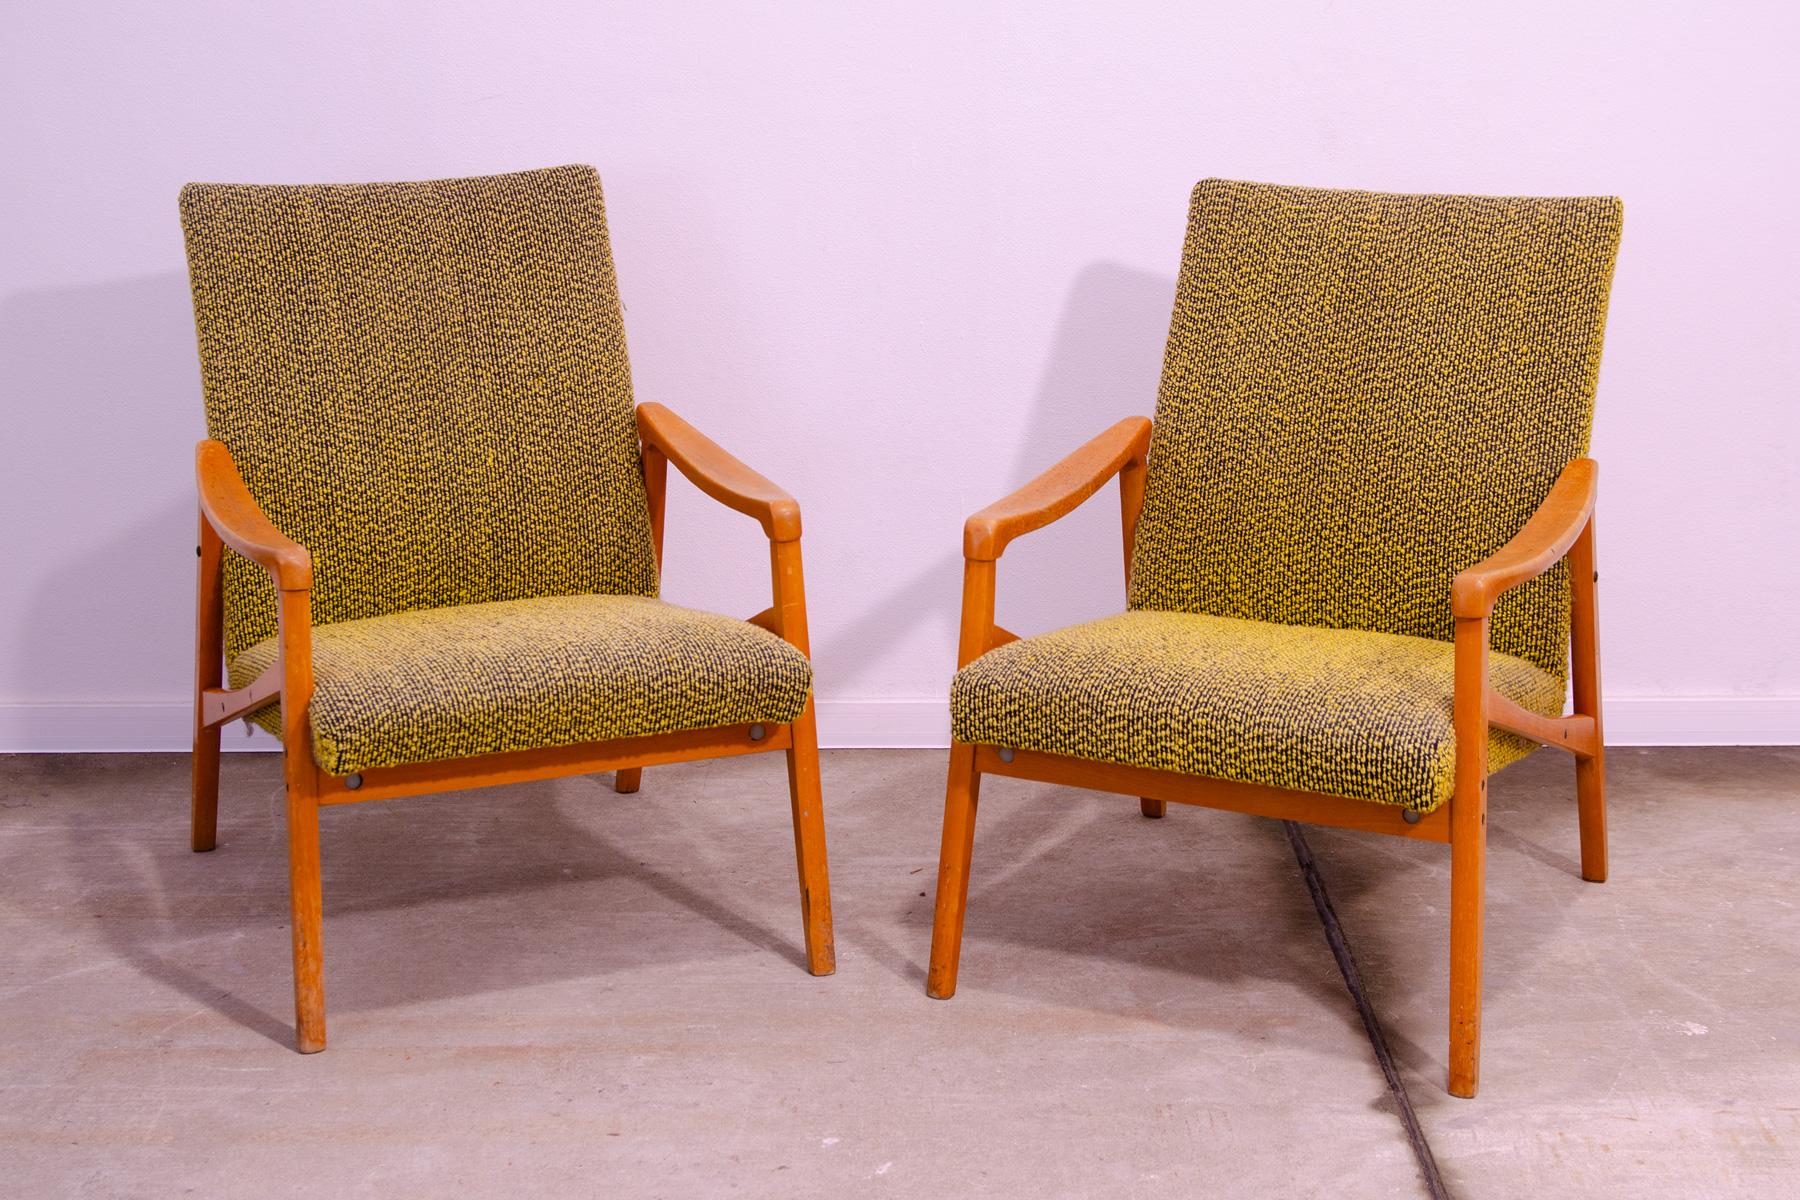 Paire de fauteuils, fabriqués dans l'ancienne Tchécoslovaquie dans les années 1970. Il a été conçu par Jiří Jiroutek pour Interiér Praha et fait partie de l'ensemble de salon U-550. La structure est en bois de hêtre et les chaises sont recouvertes